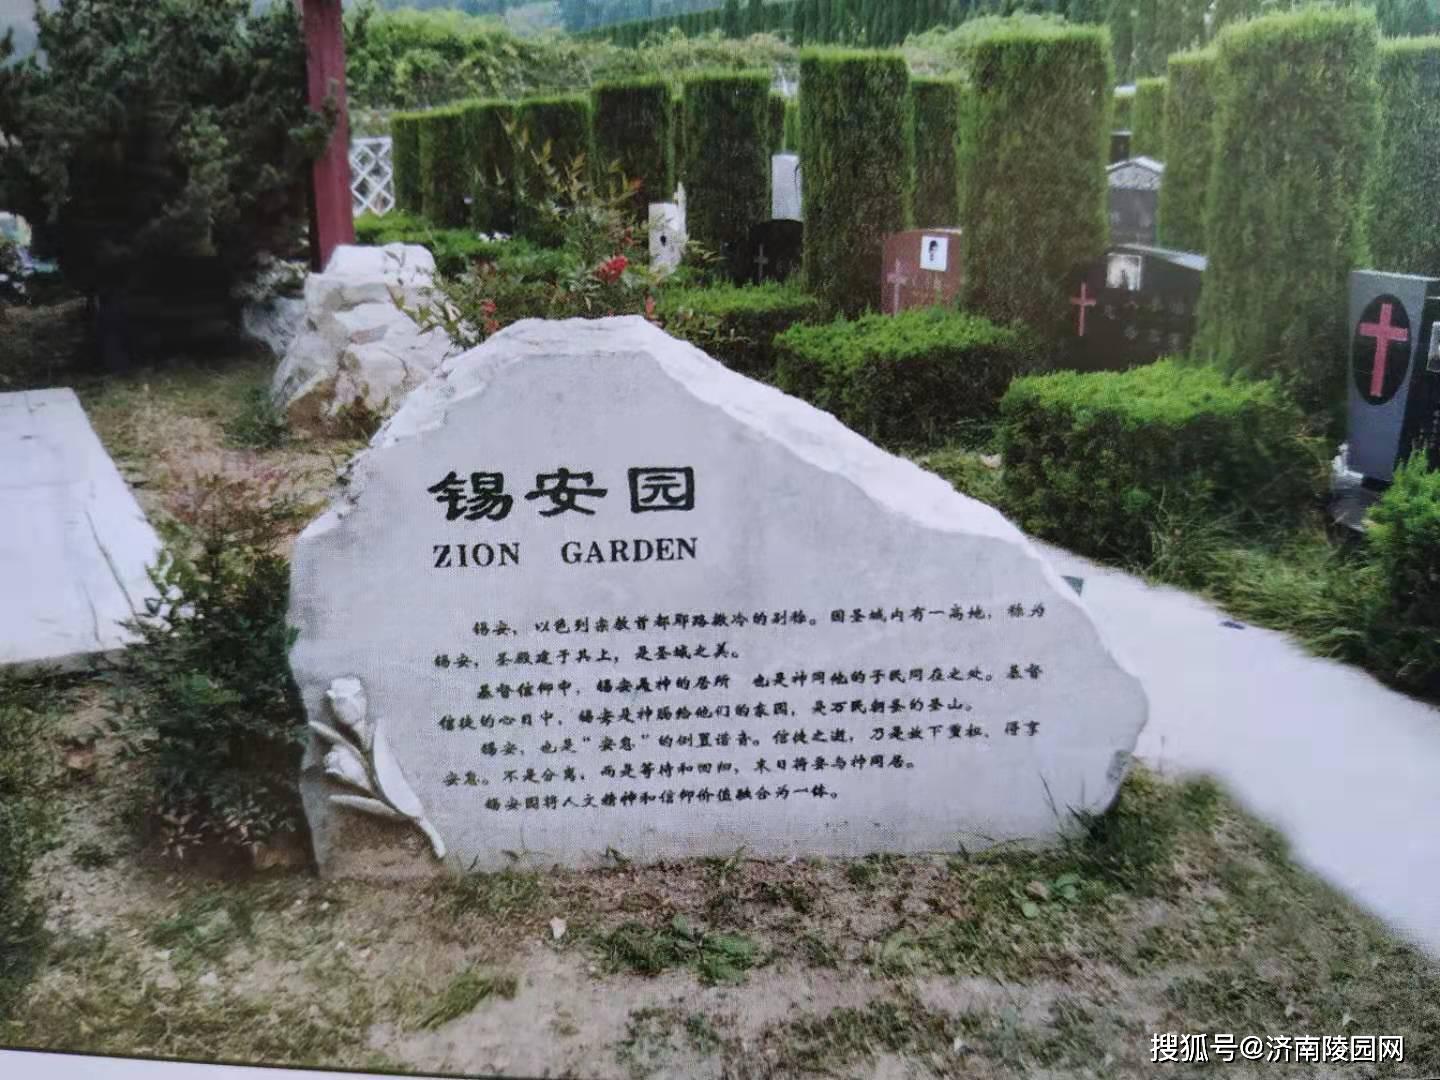 原创济南陵园网:山东福寿园公墓有多少个园区?有哪些园区值得推荐?